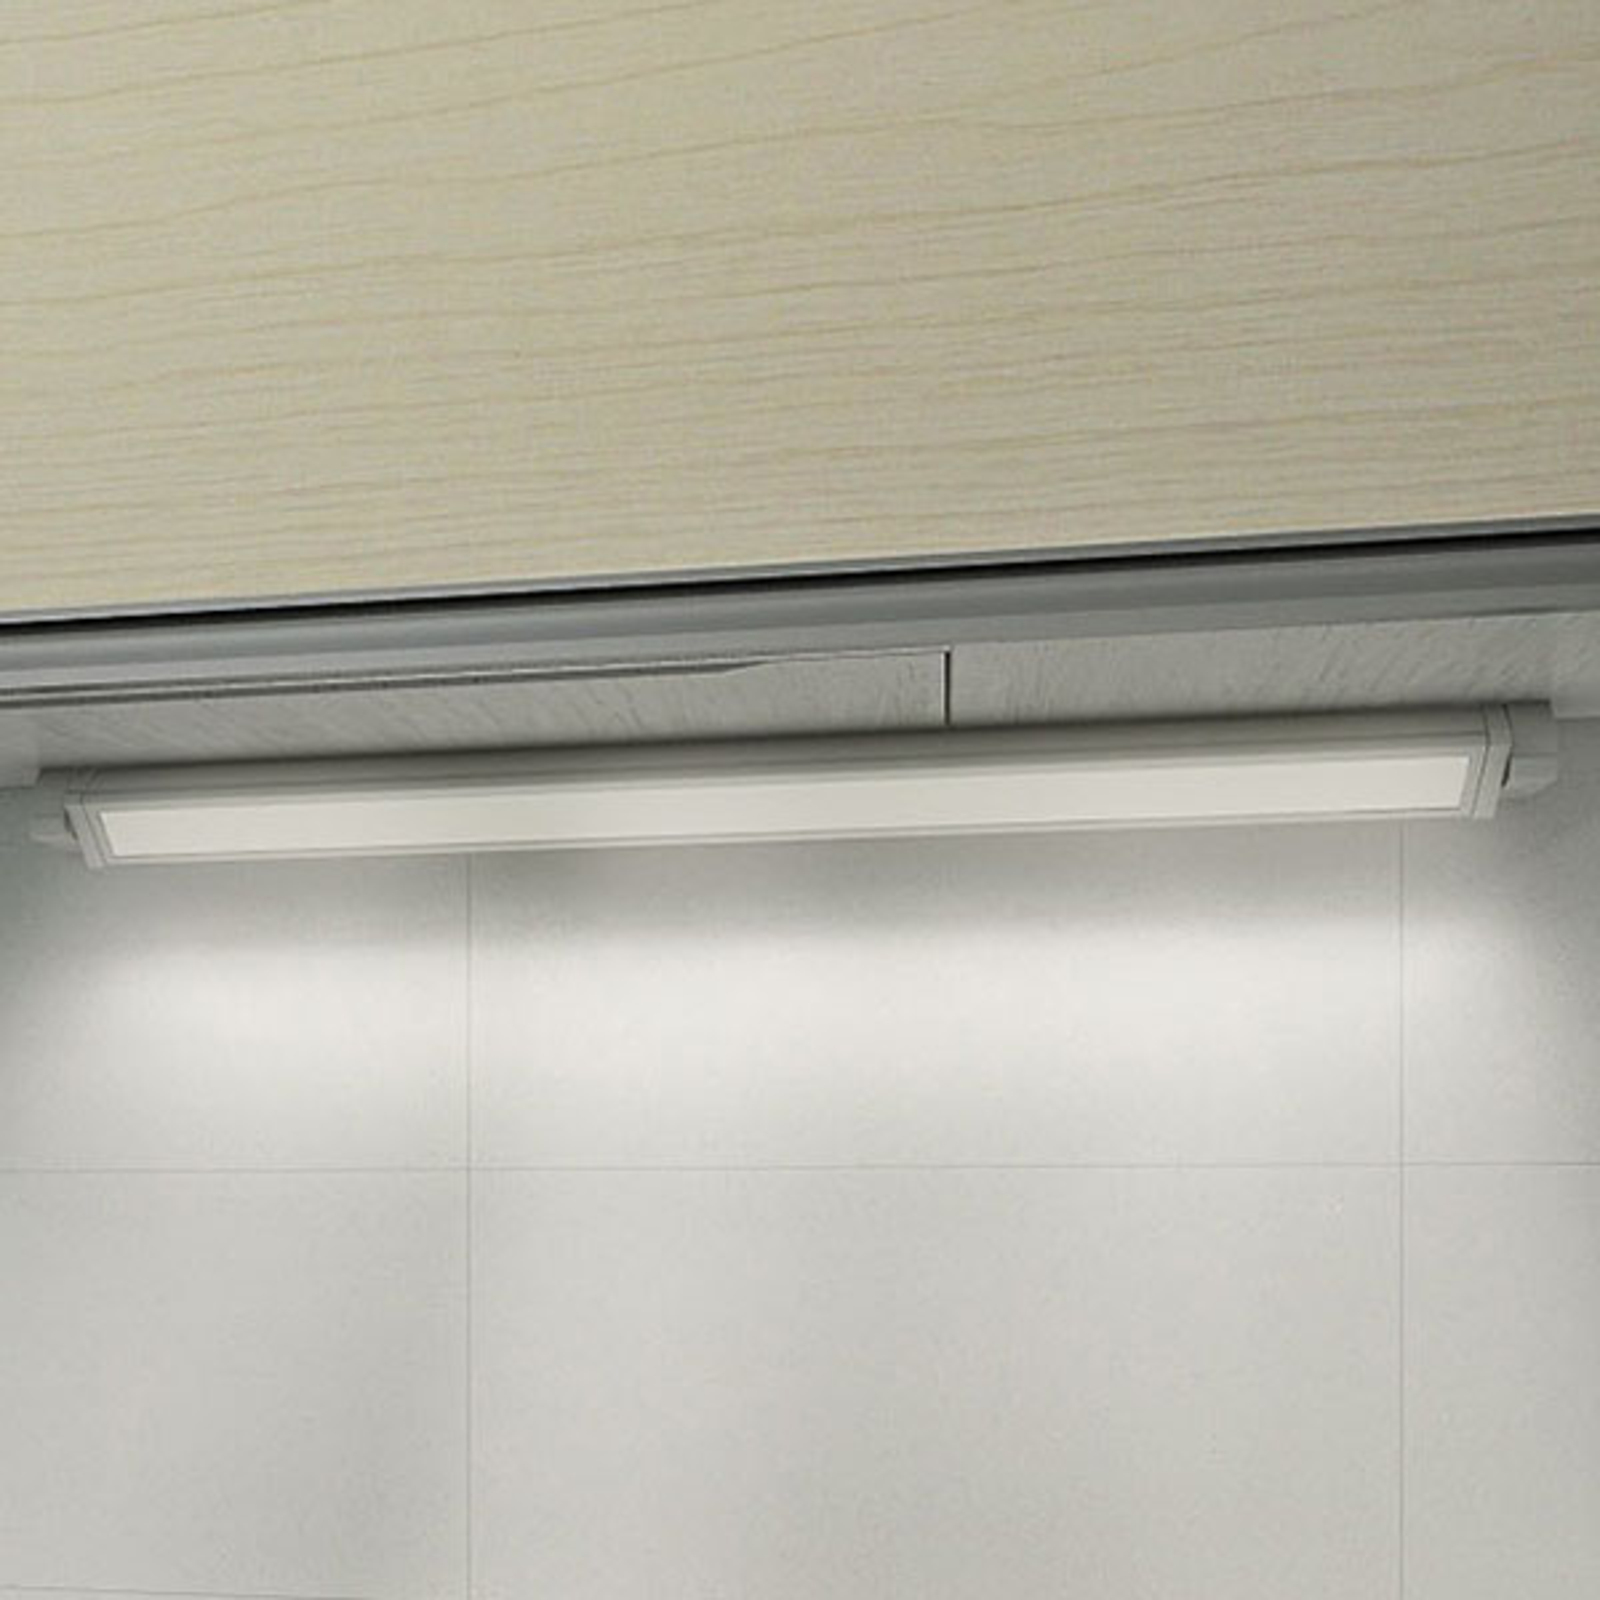 LED-meubel-aanbouw lamp 957, lengte 34,8 cm